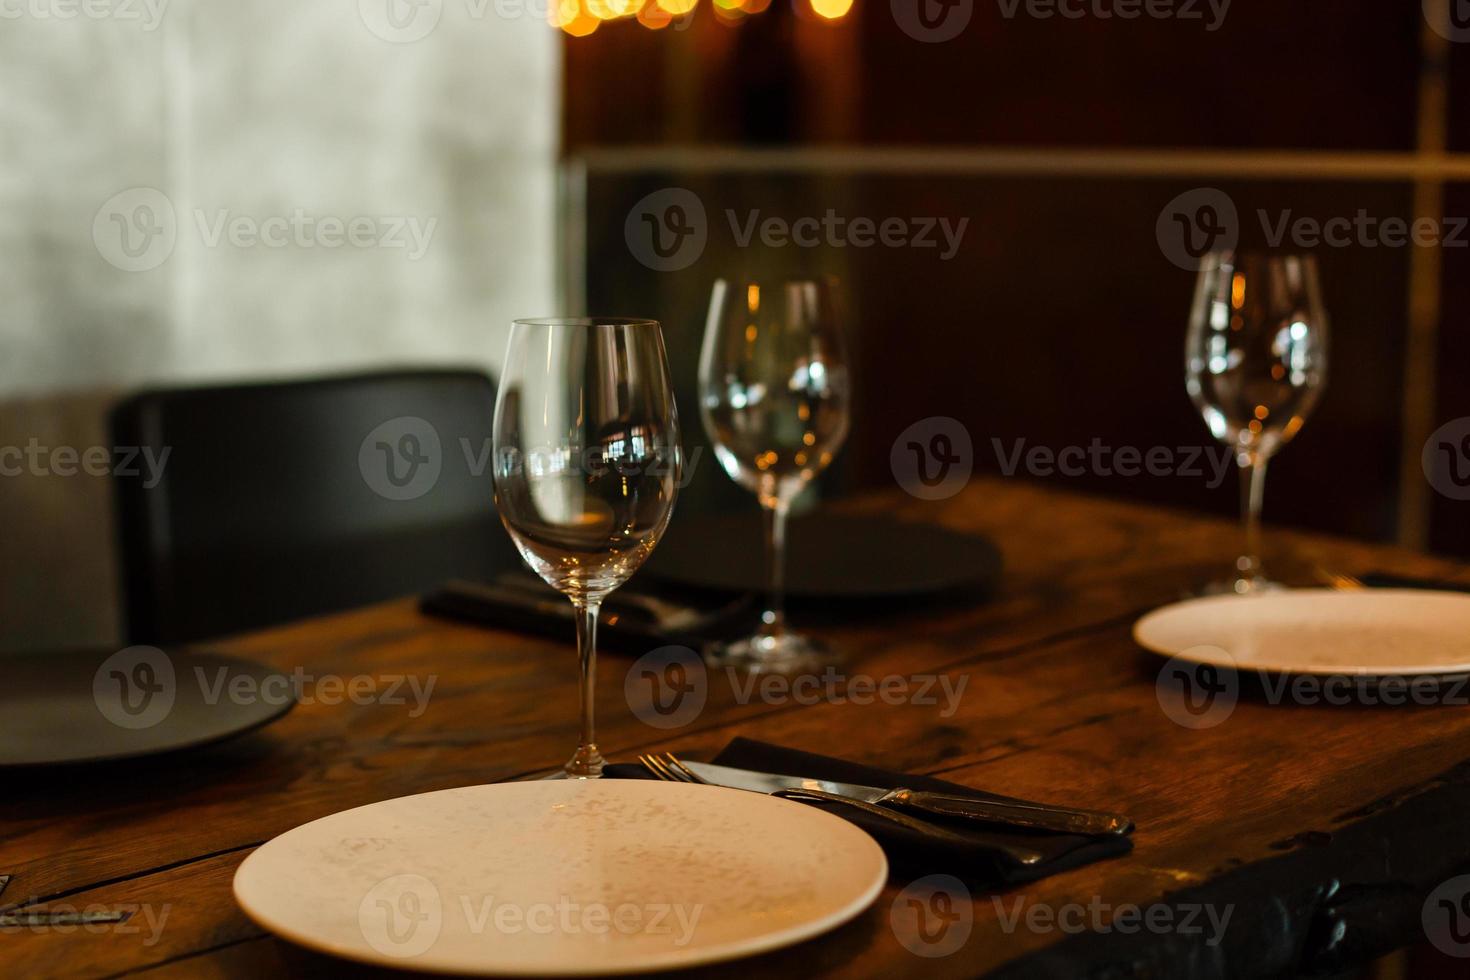 verres, fourchettes, couteaux, assiettes sur une table de restaurant servis pour le dîner photo